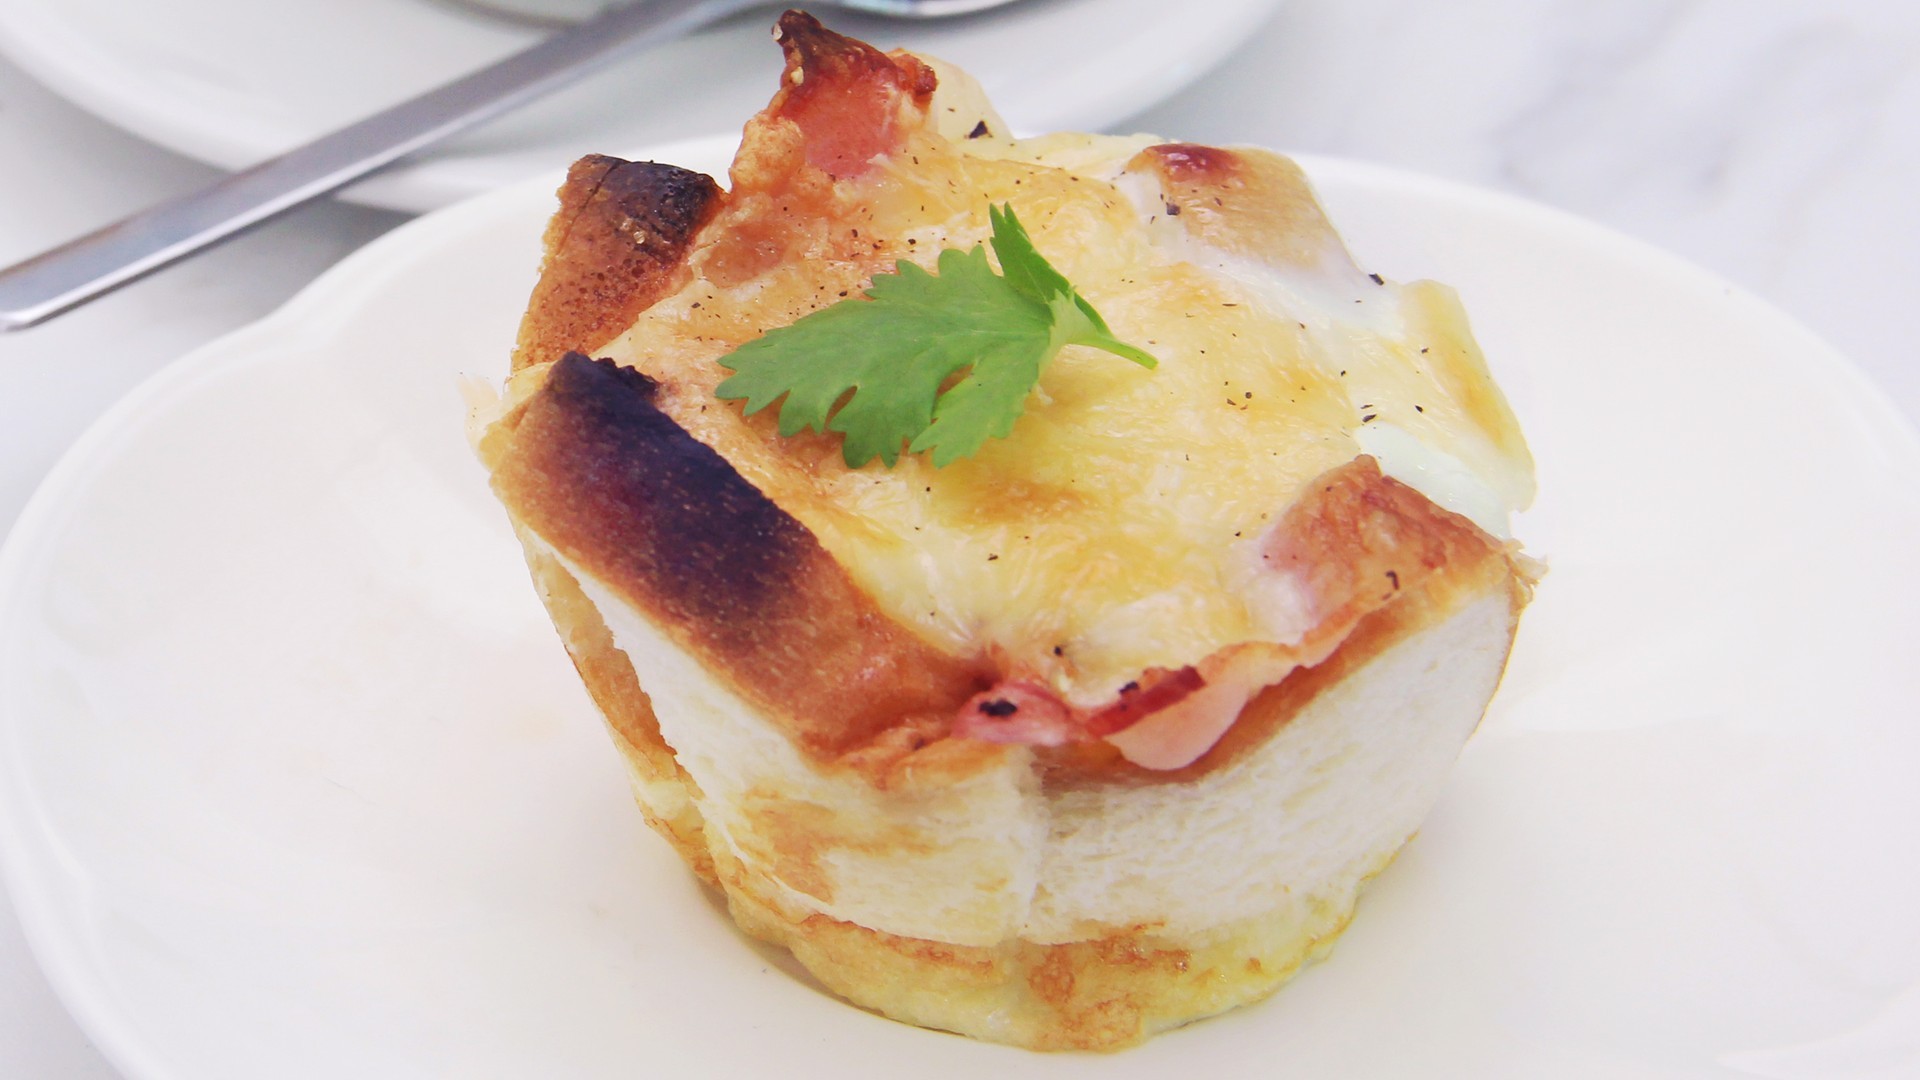 วิธีทำ เมนู “ขนมปังหน้าเบคอนชีส” อาหารเช้าสุดฟิน กินเท่าไรก็ไม่เบื่อ!